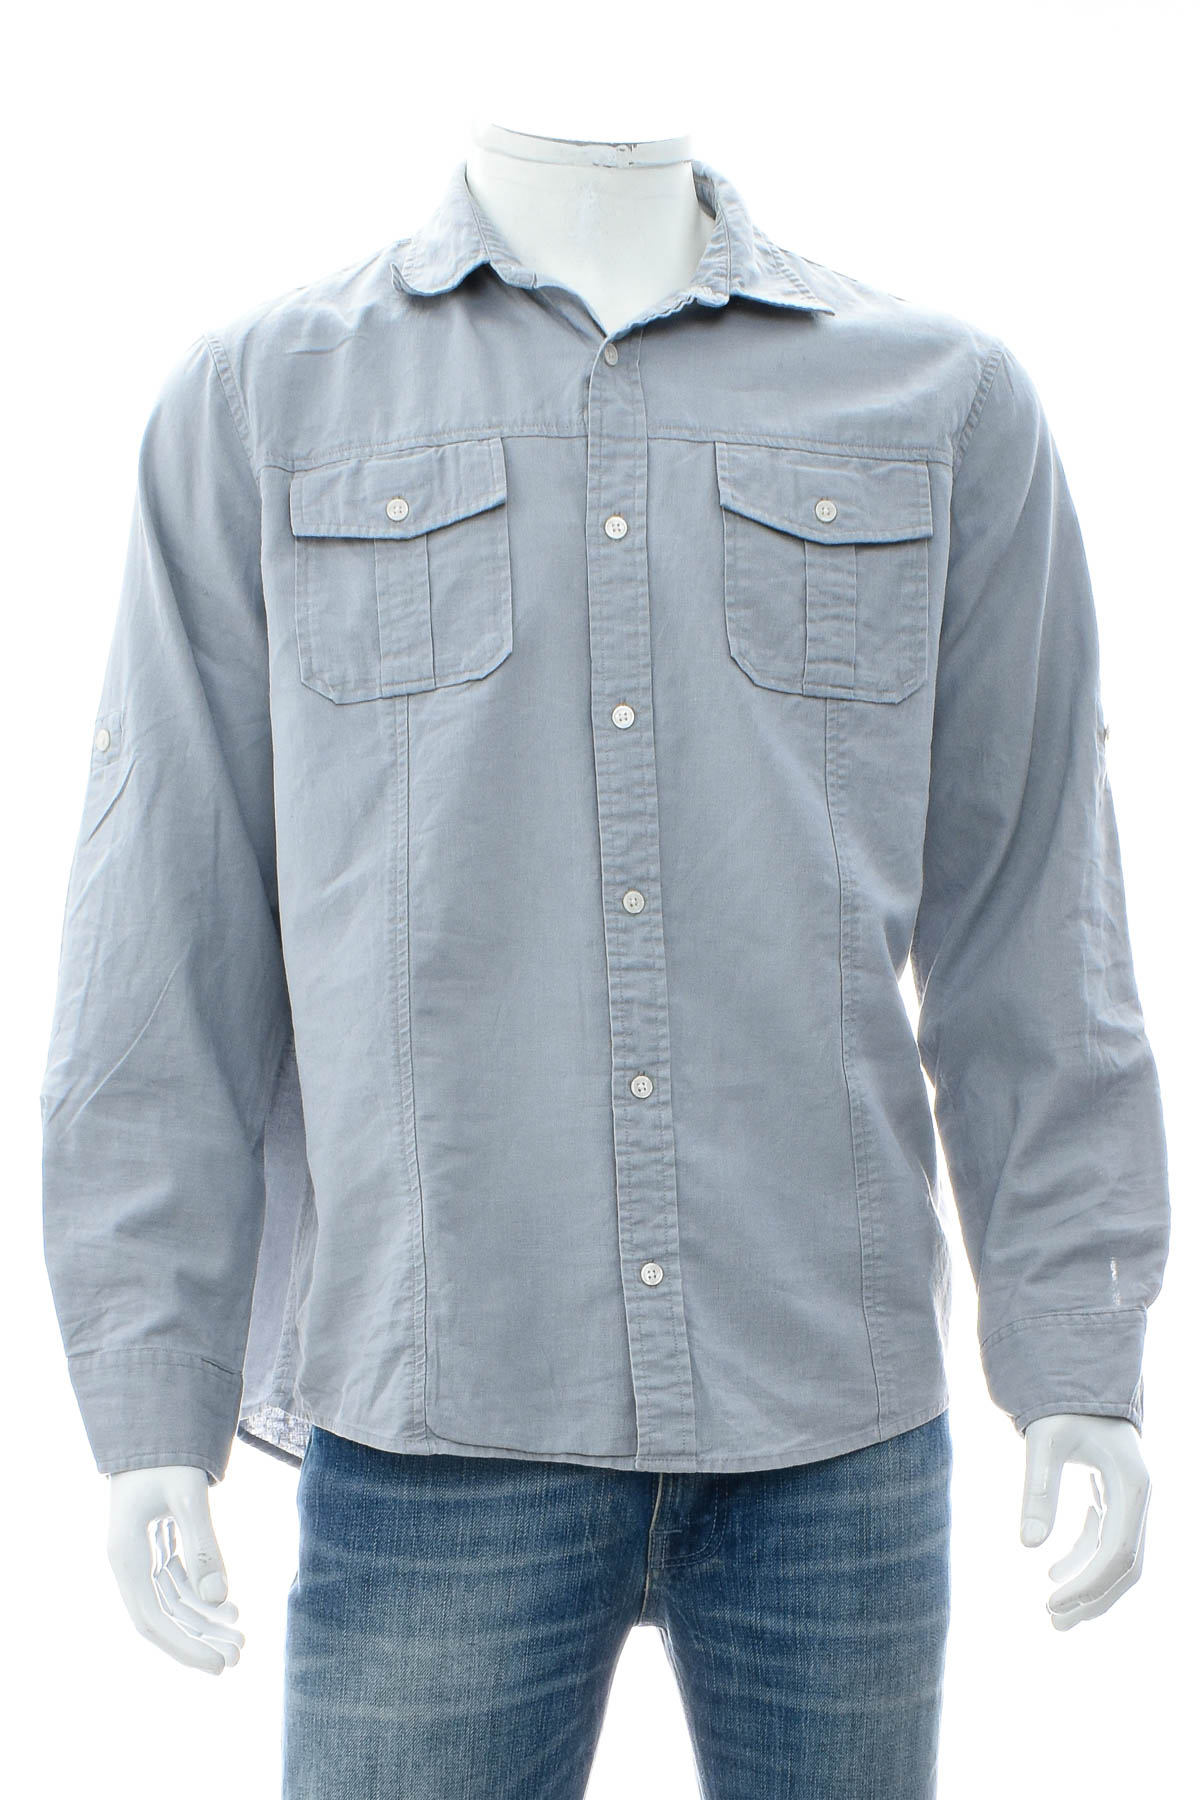 Ανδρικό πουκάμισο - Michael Kors - 0